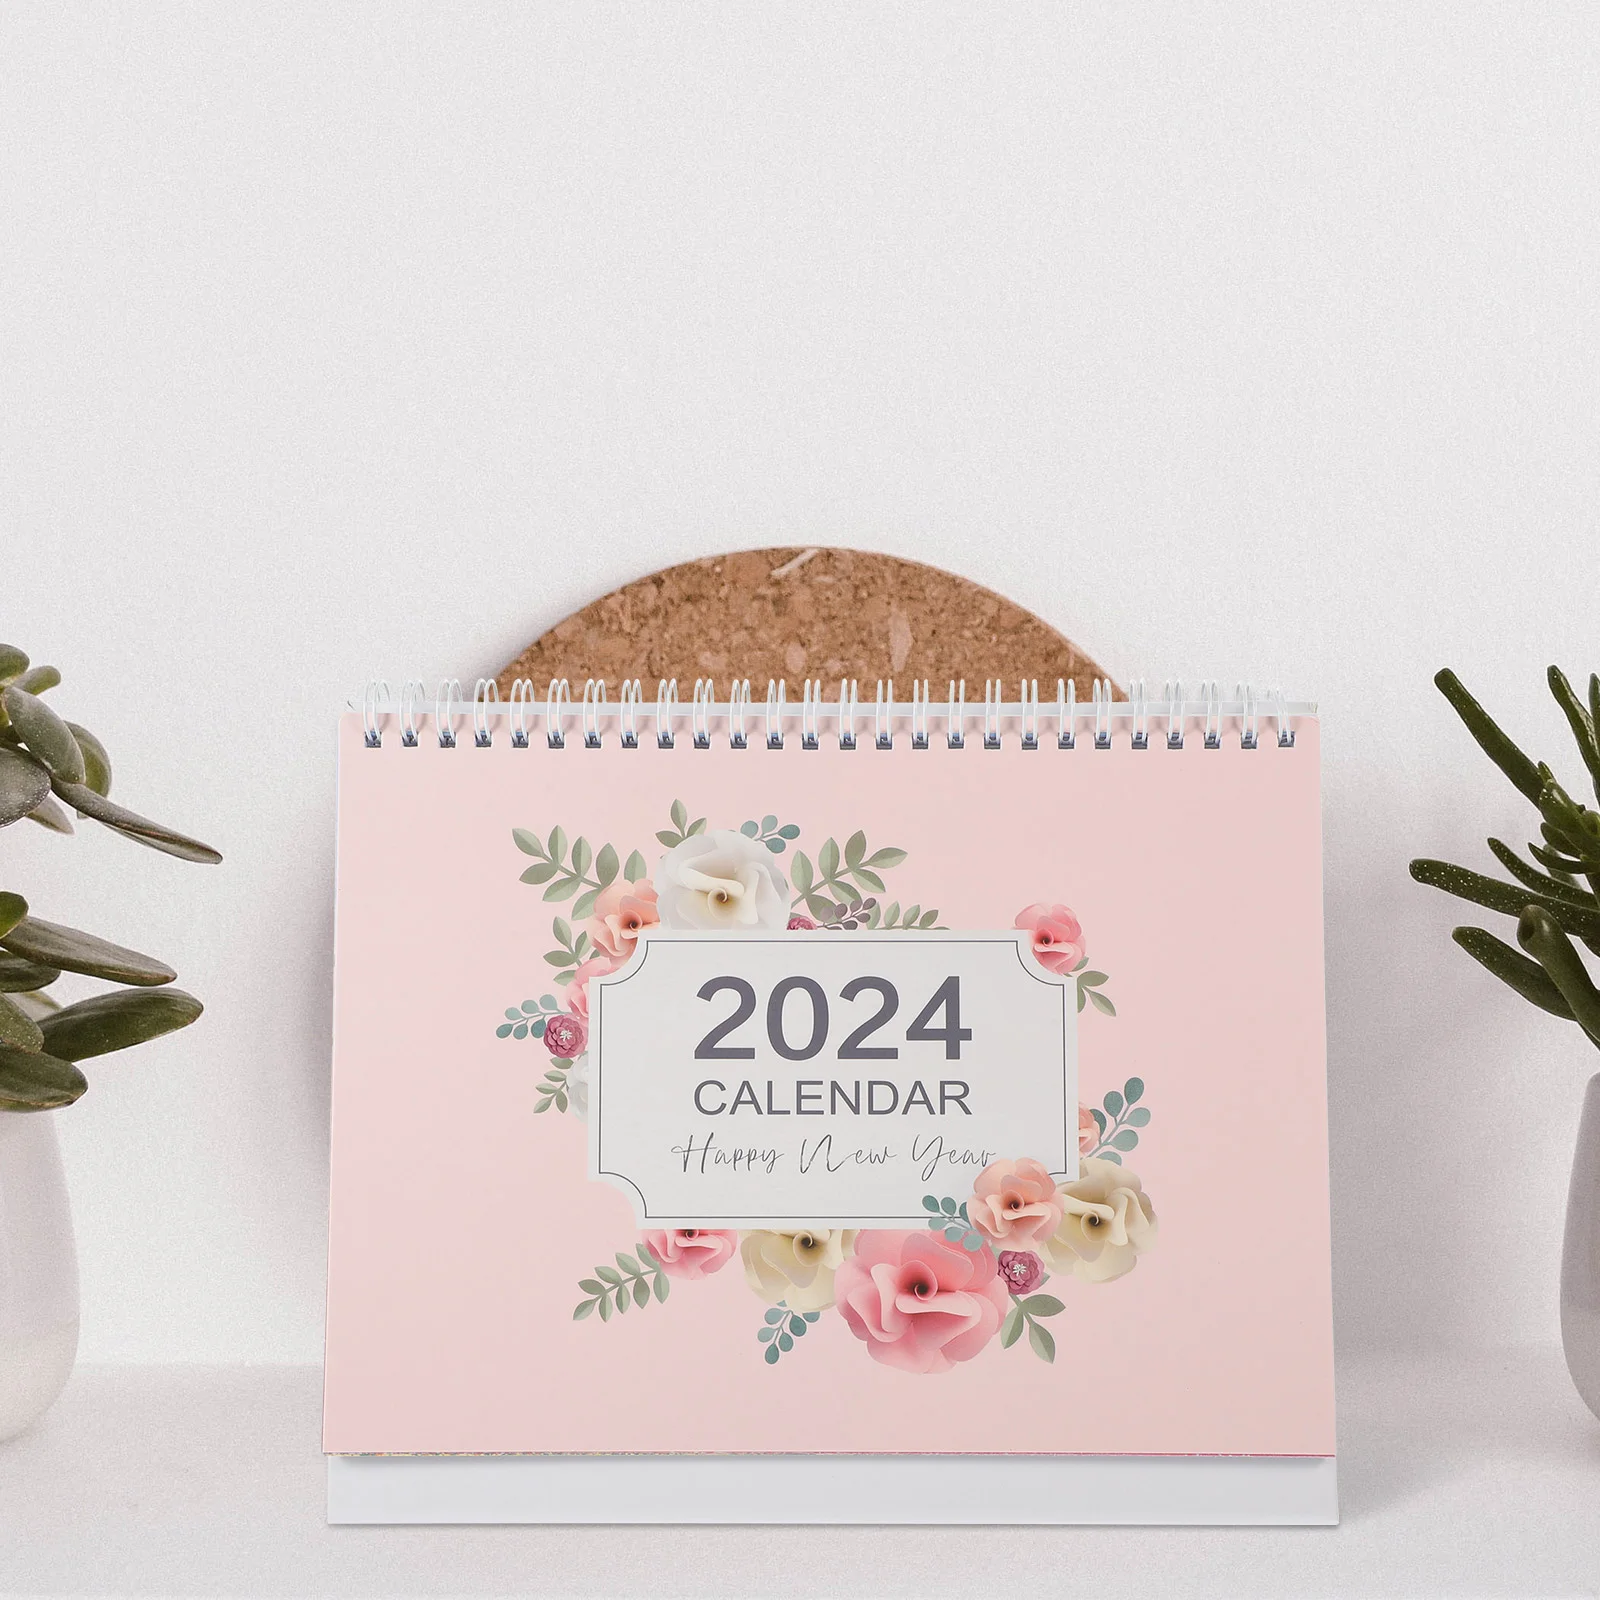 Большой календарь для стола, календарь для месяца, календарь для стола, новый год 2024, календарь для офиса